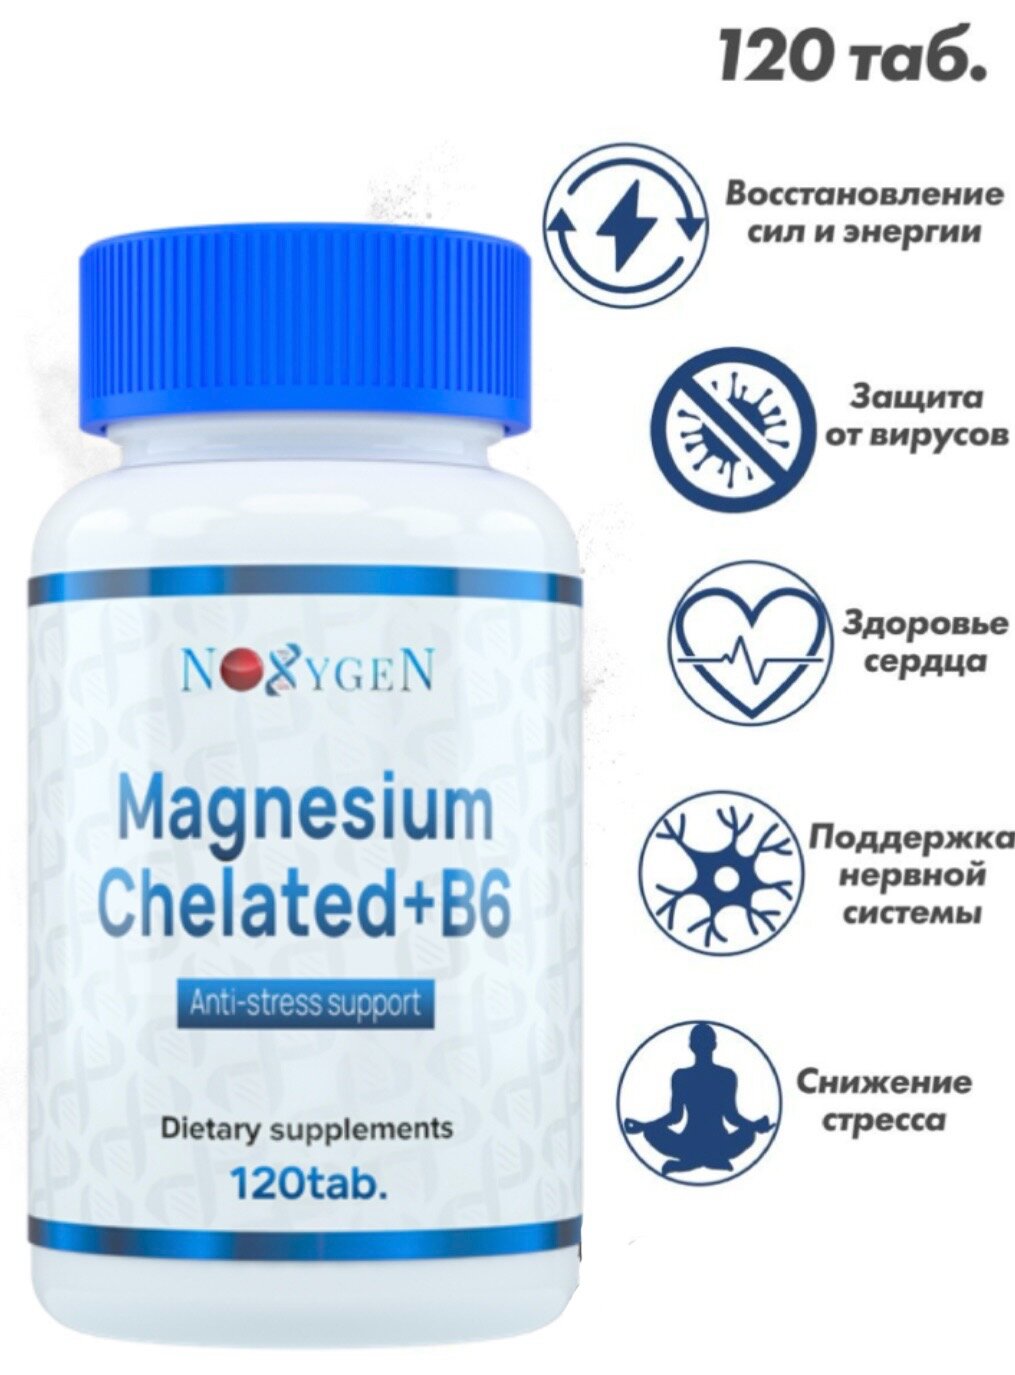 Noxygen Magnesium Chelated + B6 120таб. повышенная биодоступность - улучшение работы ЦНС, поддержка работы мозга